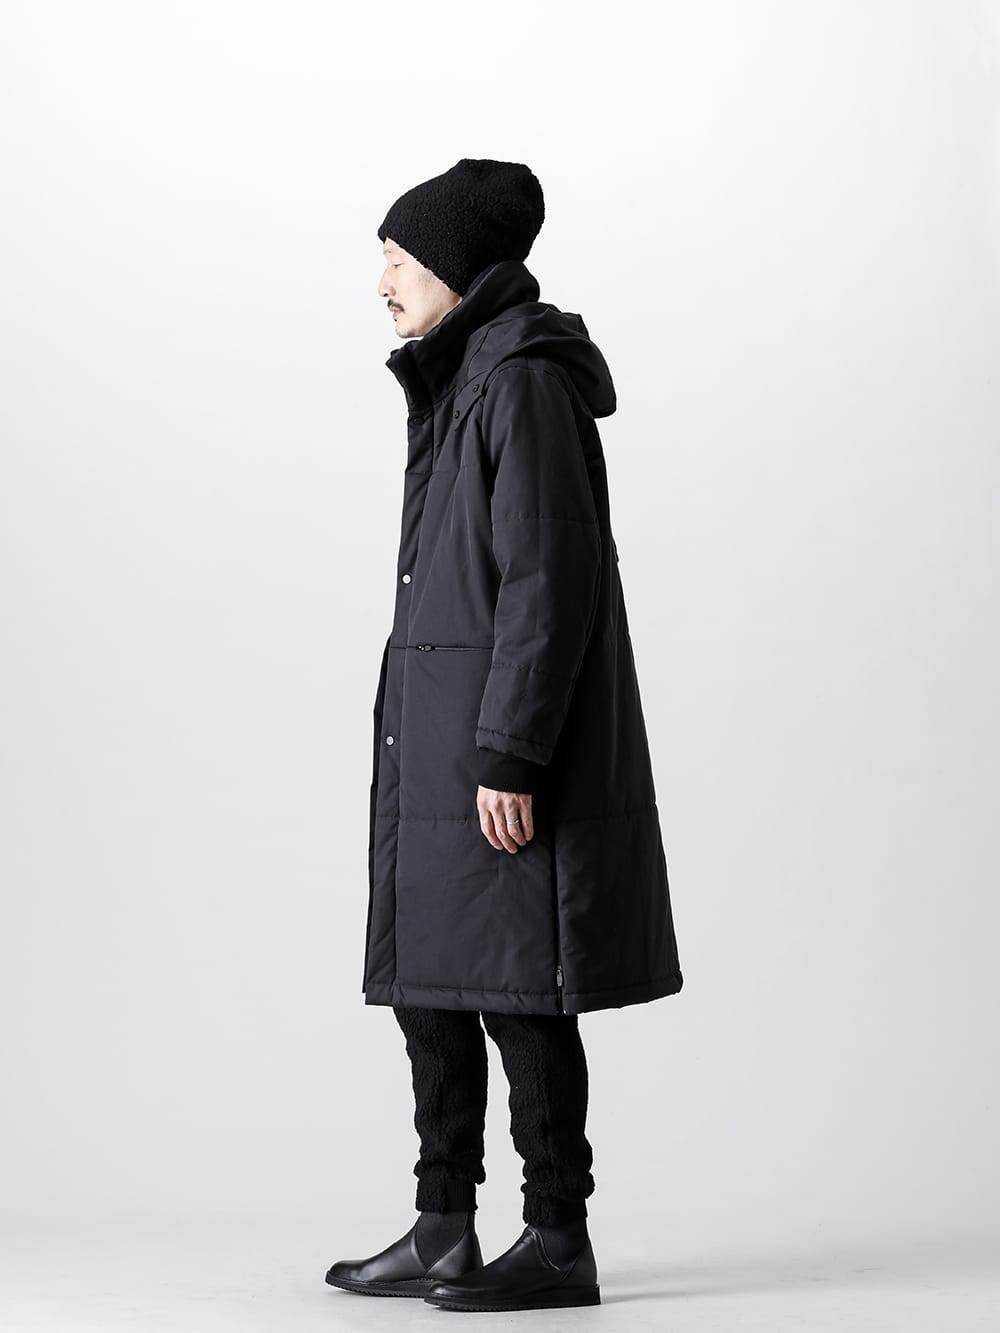 NOMEN NESCIO - ノーメンネスキオ 防寒性確かなコートを柔らかなふわふわとしたビジュアルが特徴のニットパンツで合わせました - 全身